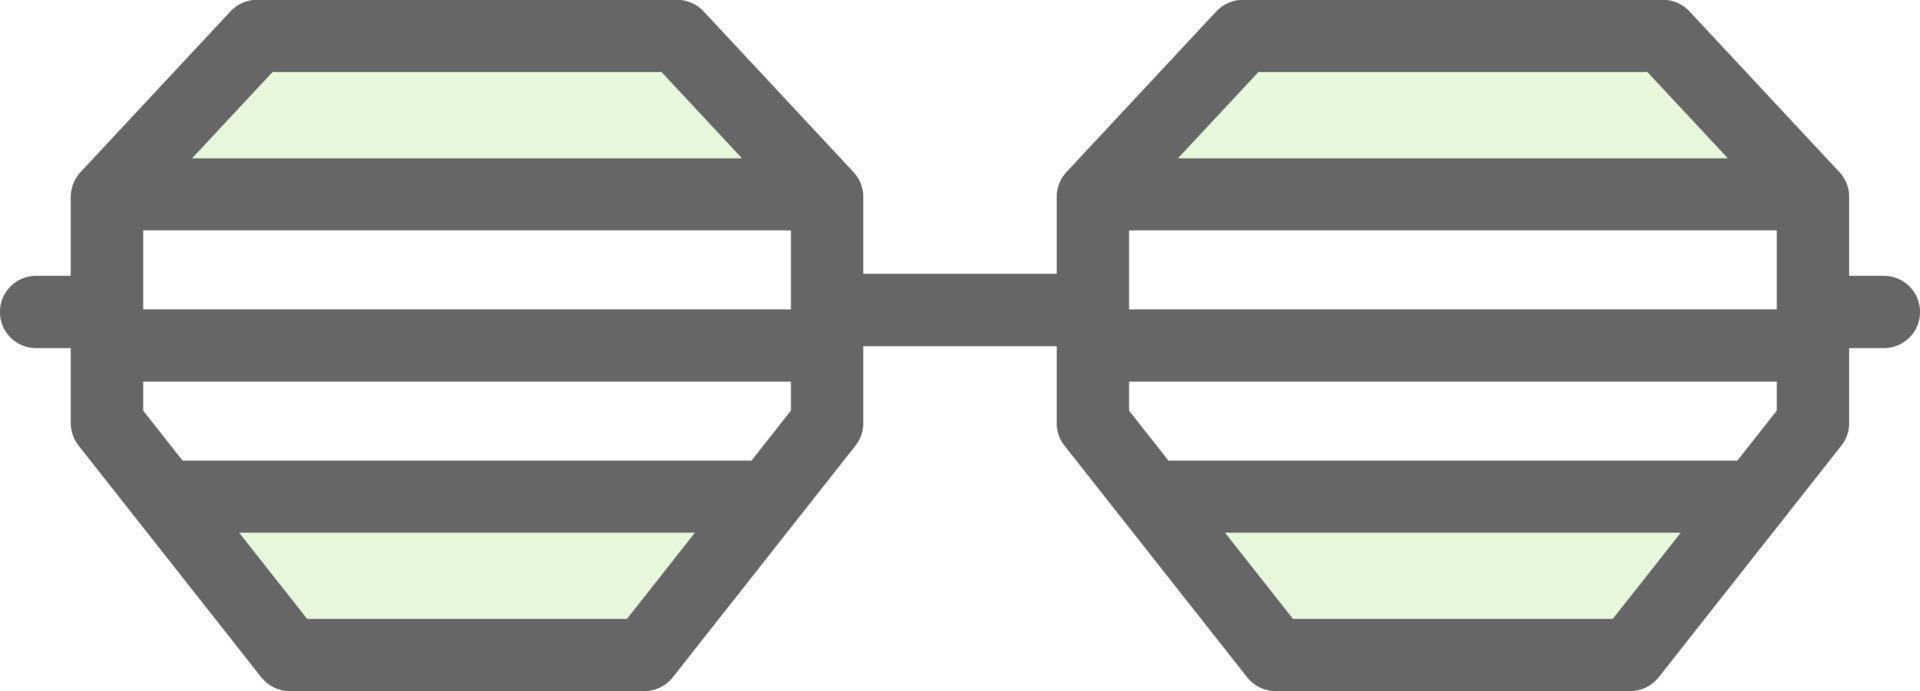 diseño de icono de vector de gafas de fiesta